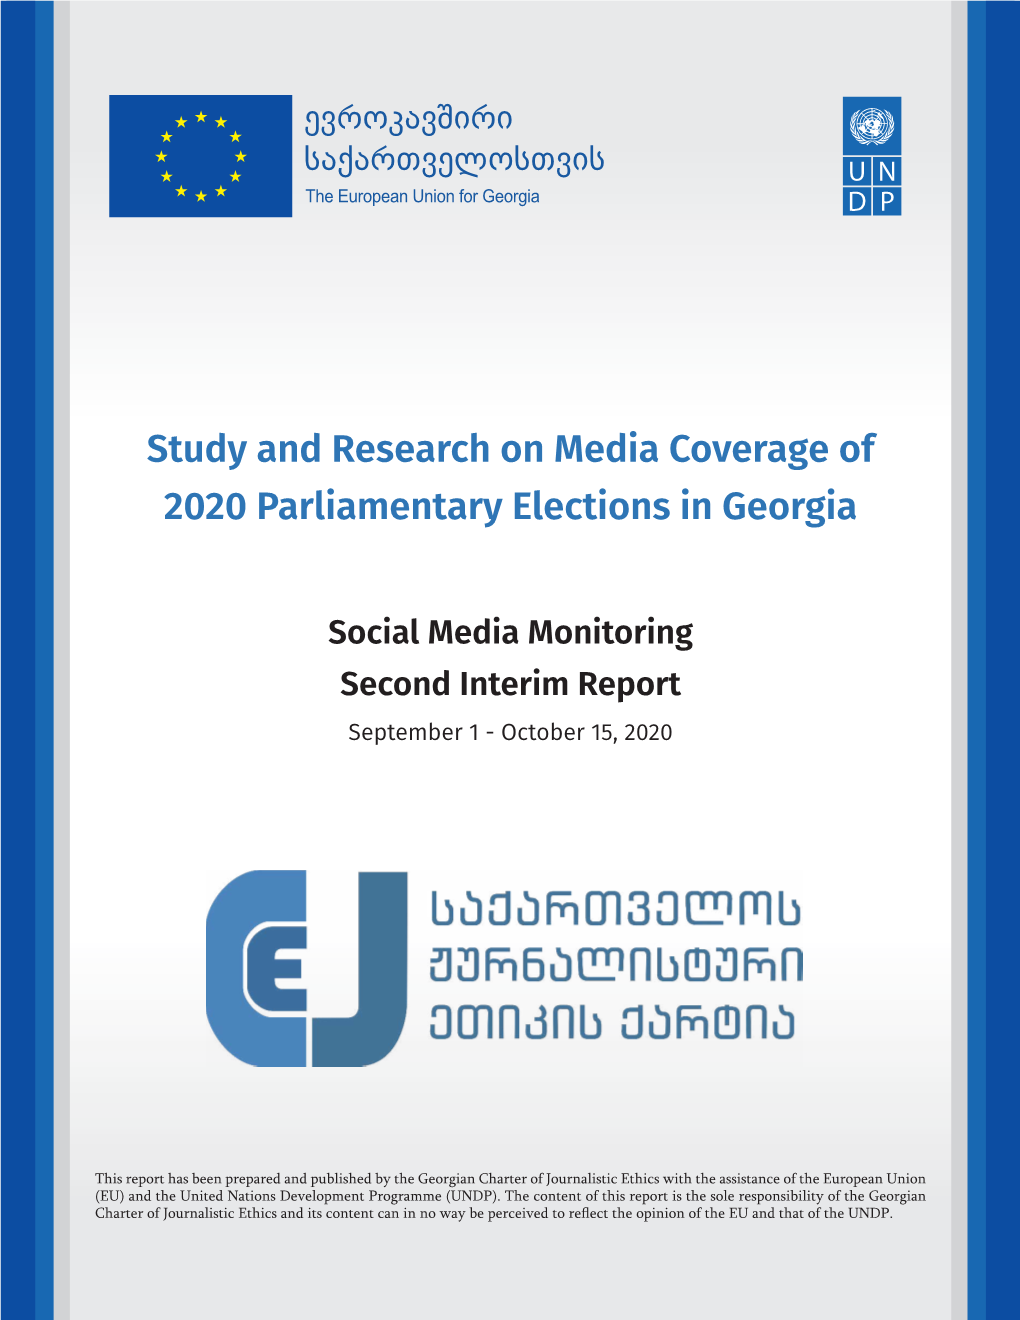 Social Media Monitoring Second Interim Report September 1 - October 15, 2020